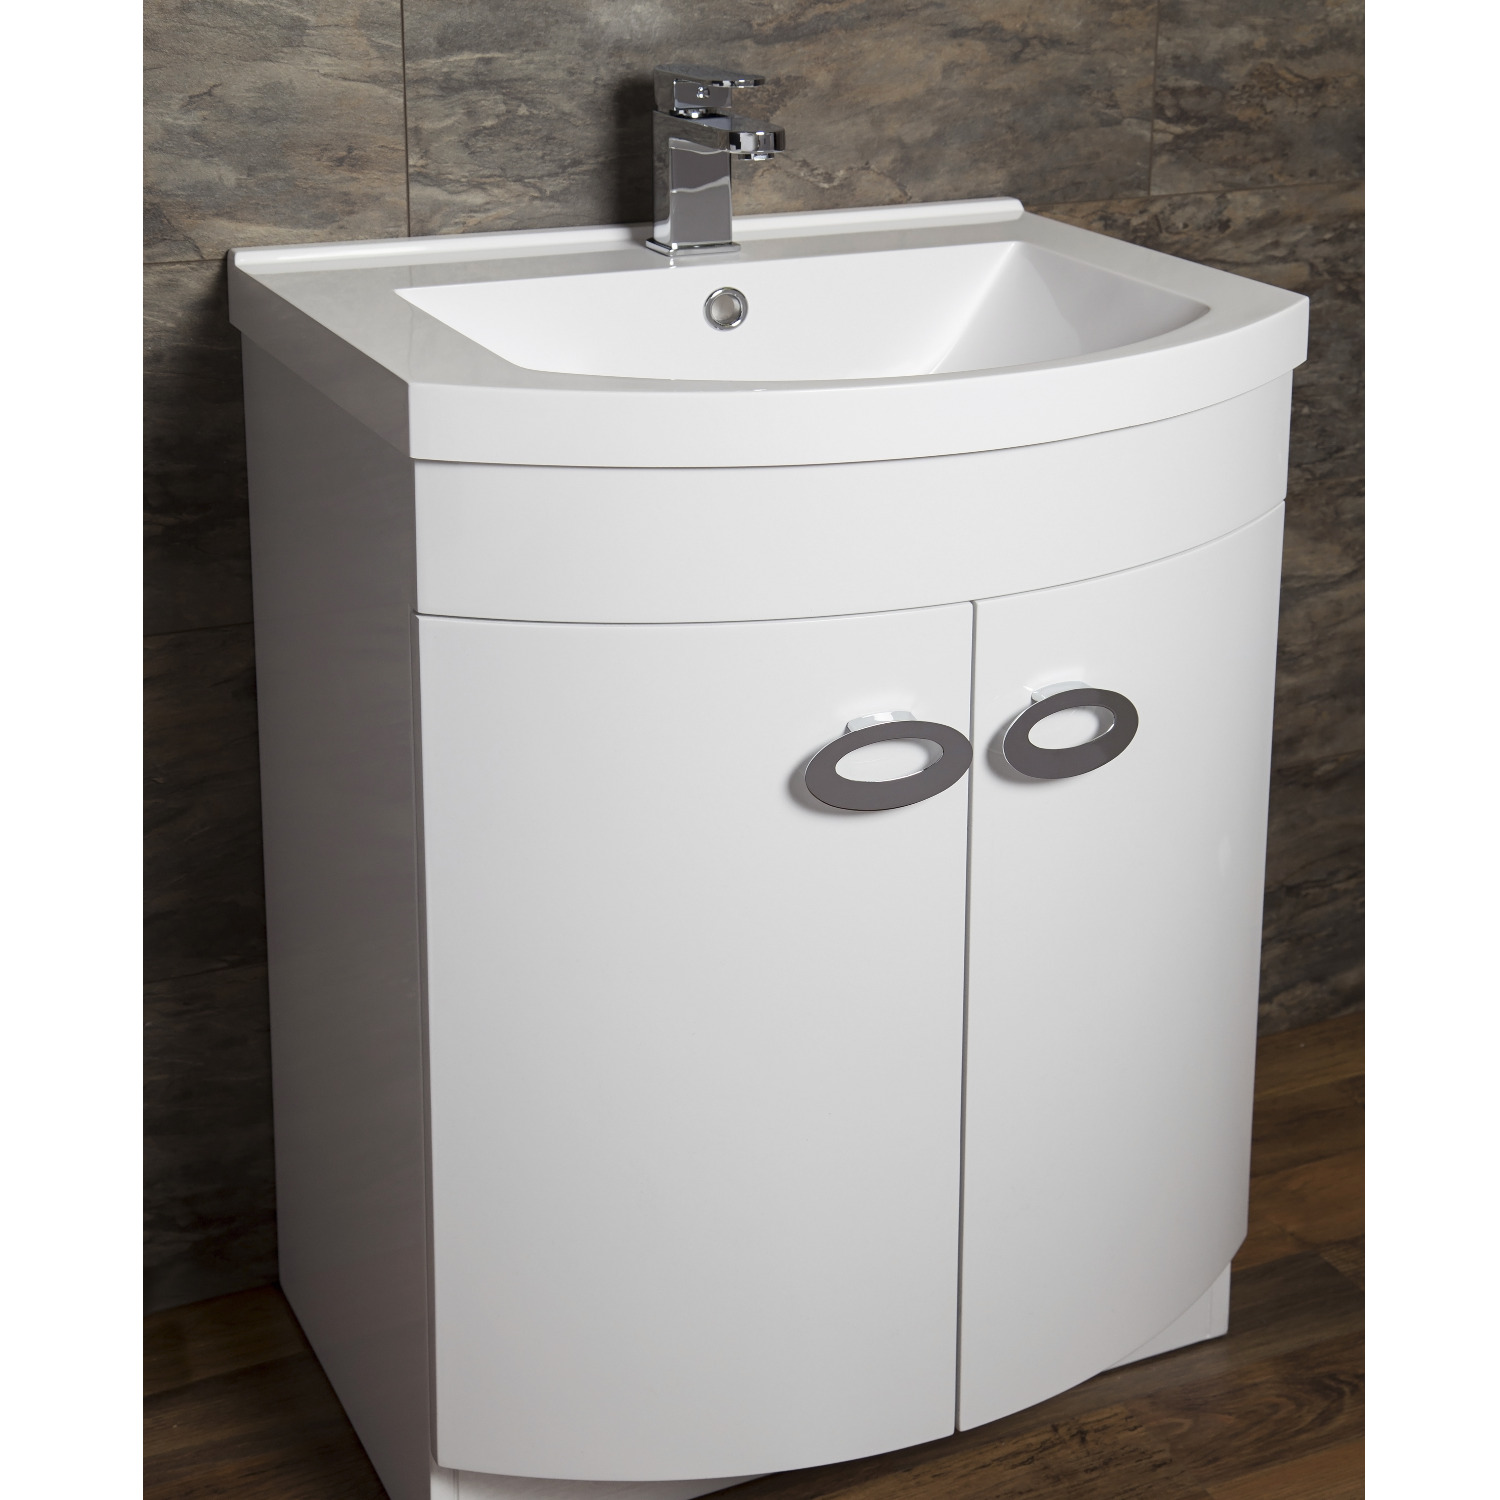 Curved White Bathroom Vanity Unit Basin W600mm Bu001 Rf Appliances Direct - Curved Bathroom Sink Unit